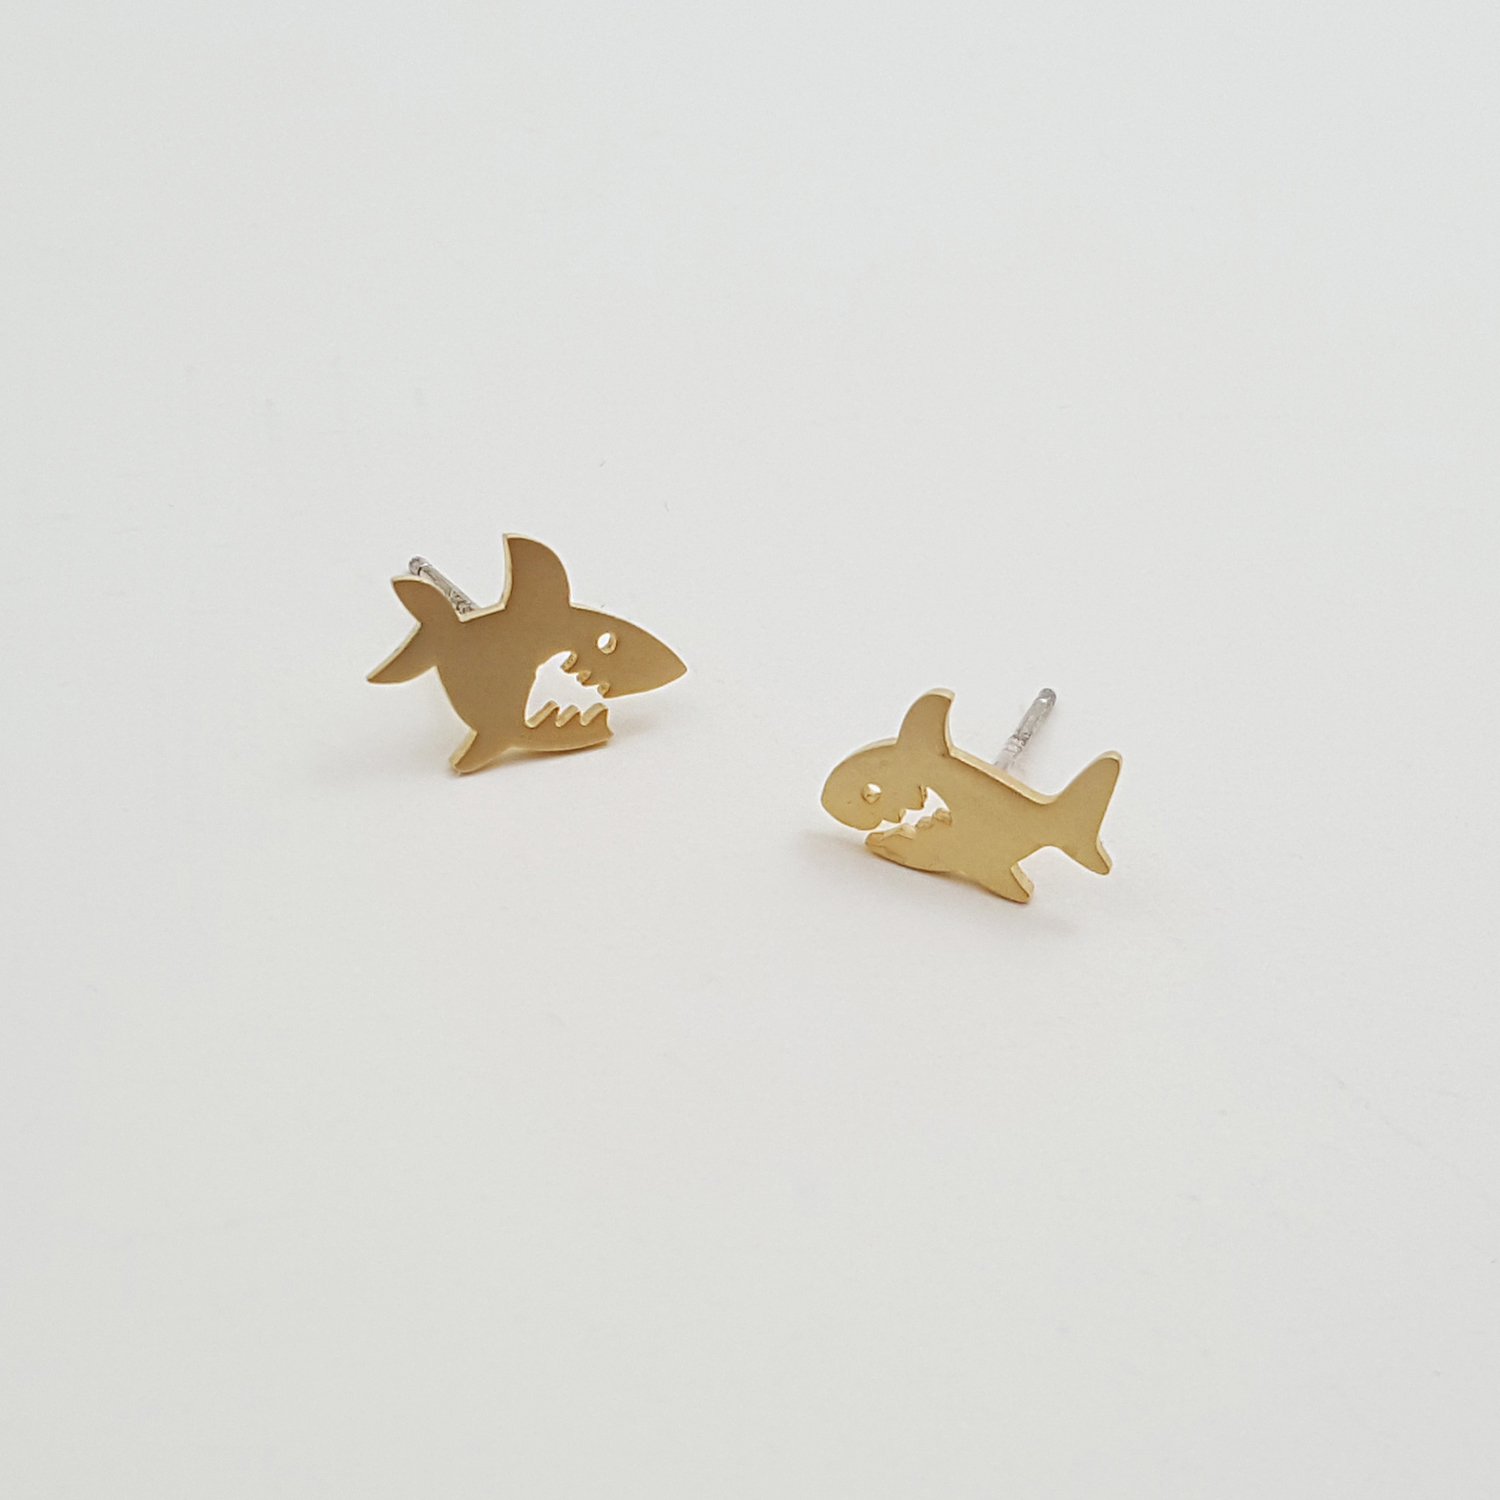 Cute Shark Shaped Stud Earrings In Gold | Minimalist Animal Jewelry on ...